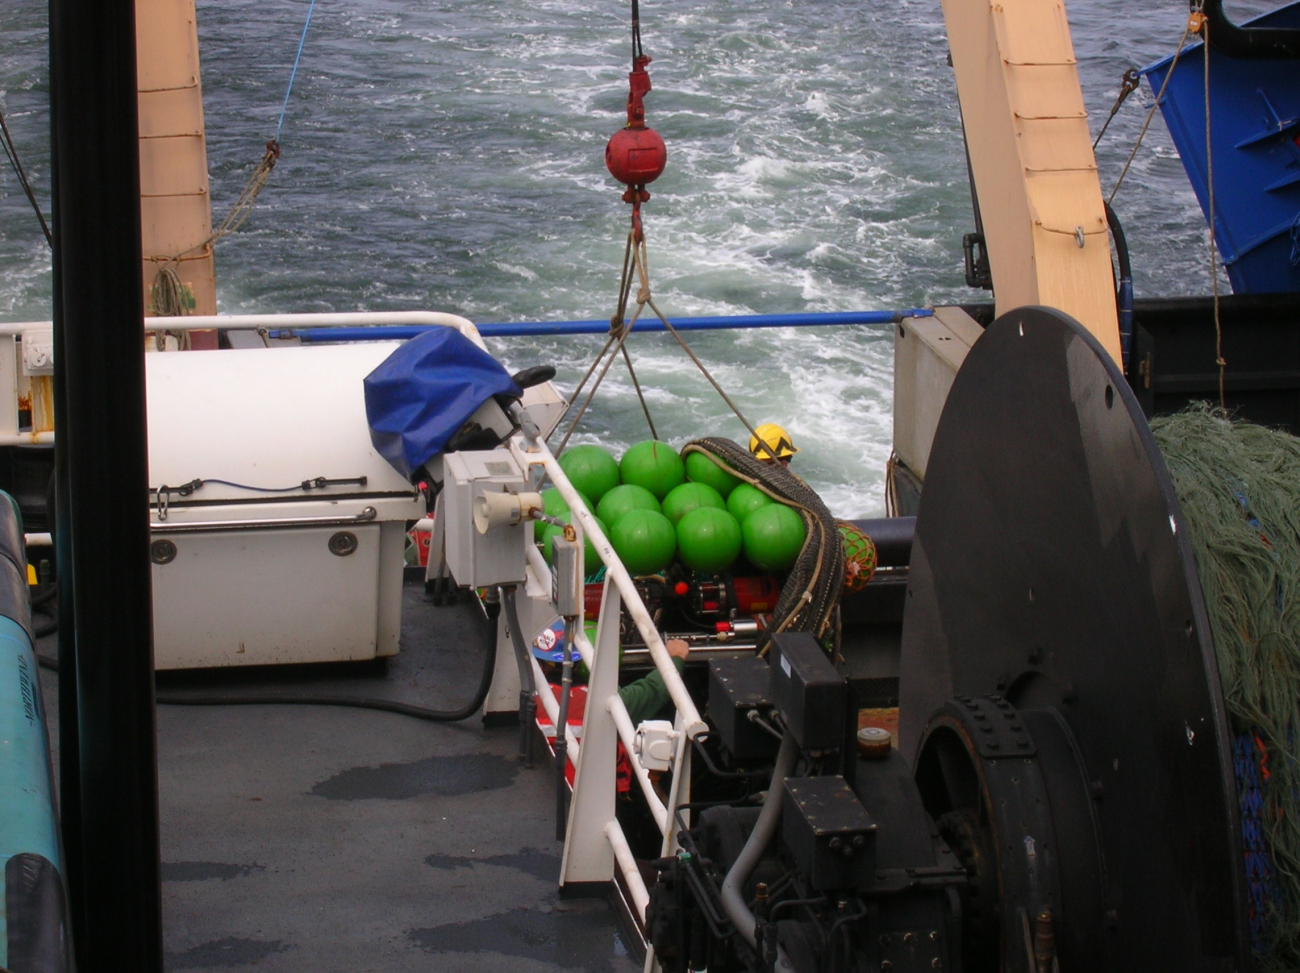 Teacher at Sea on board the NOAA Ship OSCAR DYSON